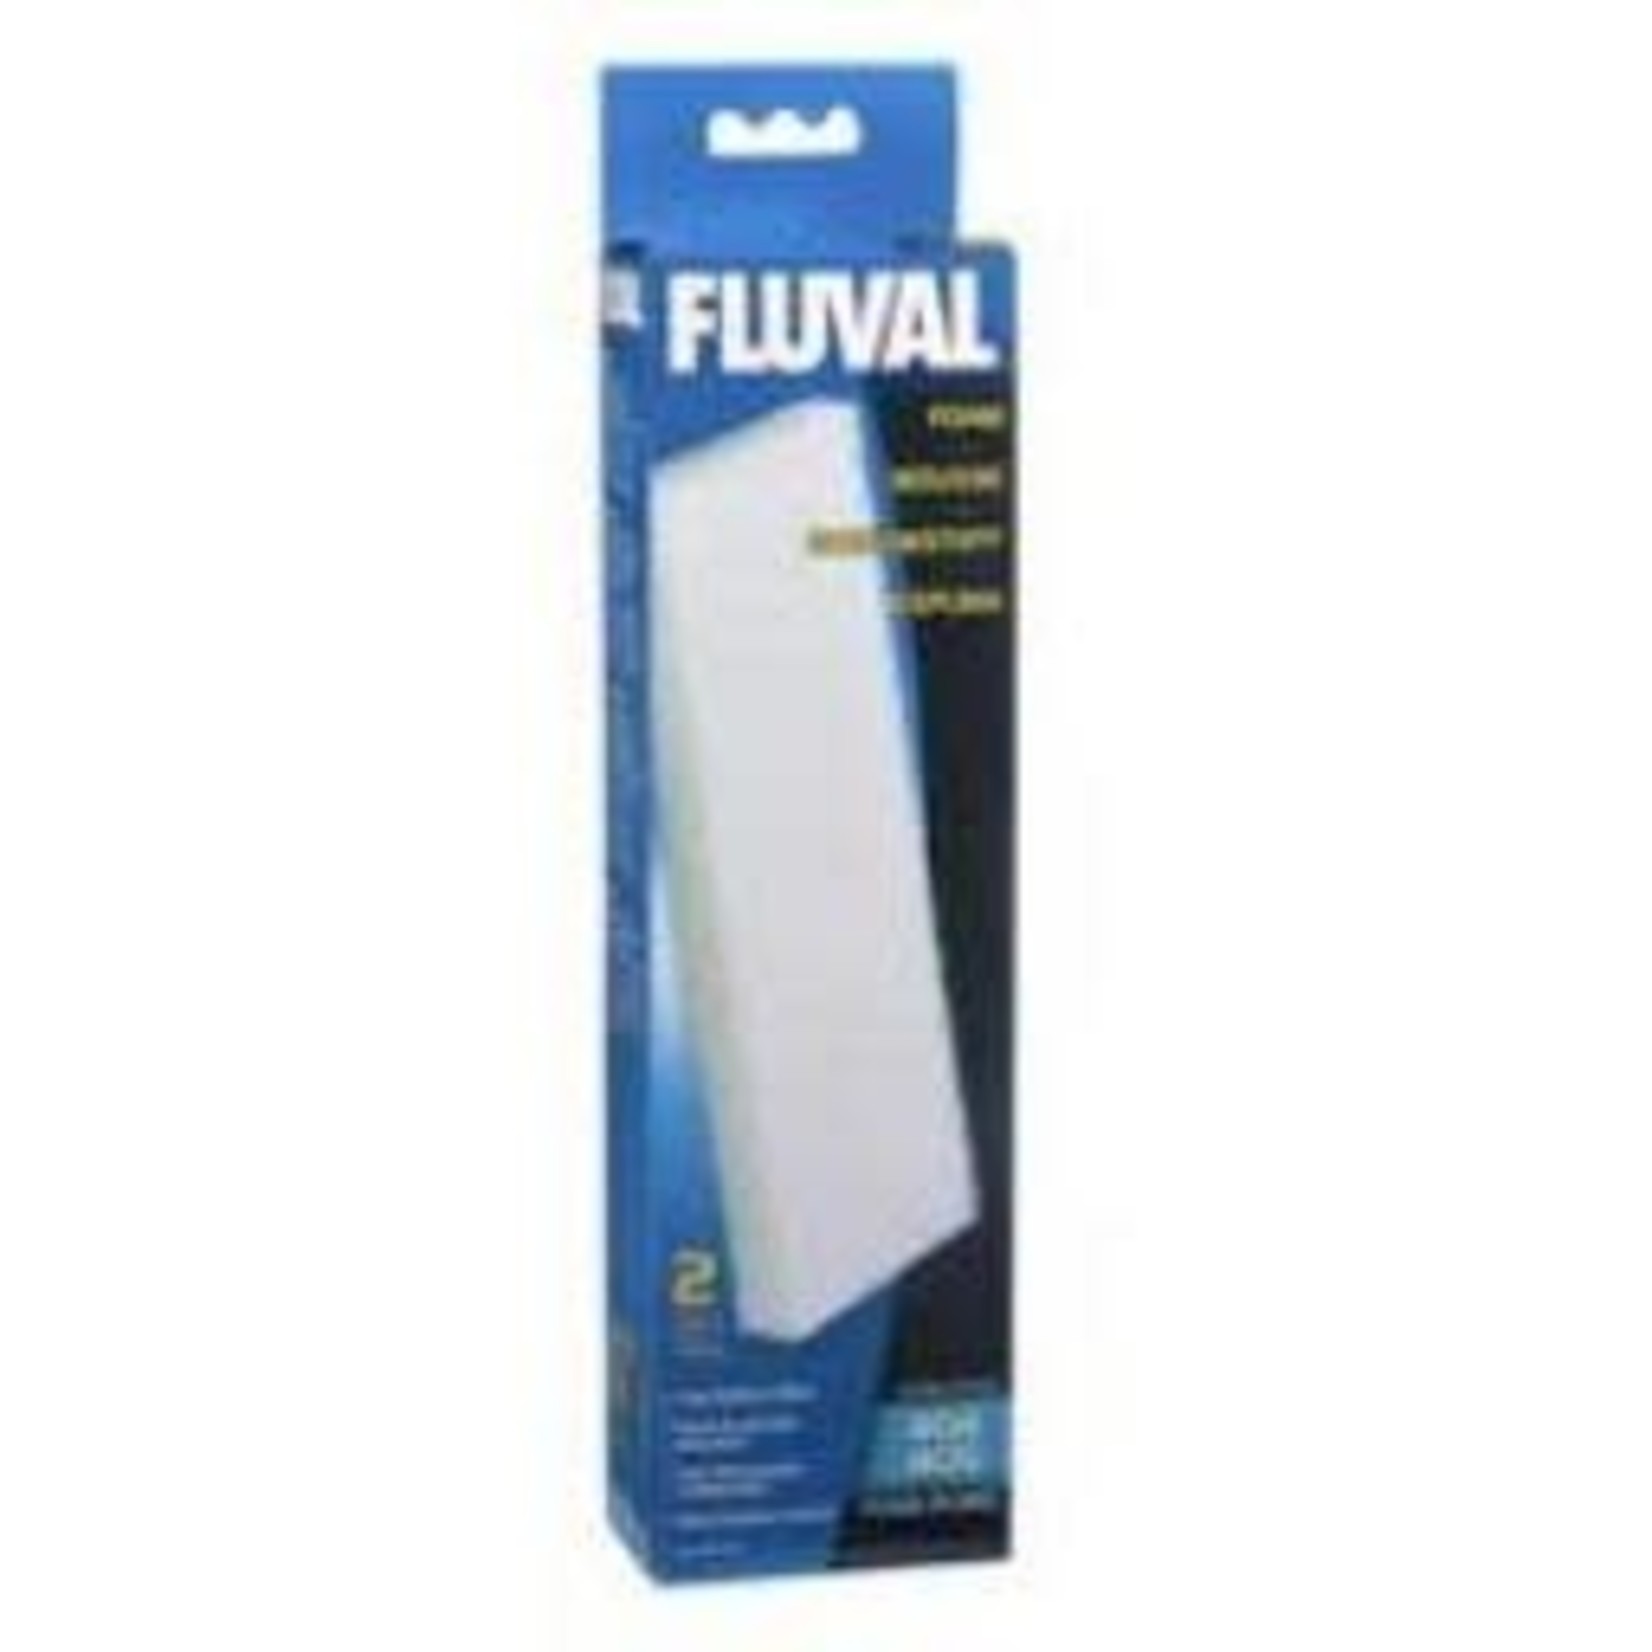 FLUVAL Fluval Foam Filter Block F/404-V